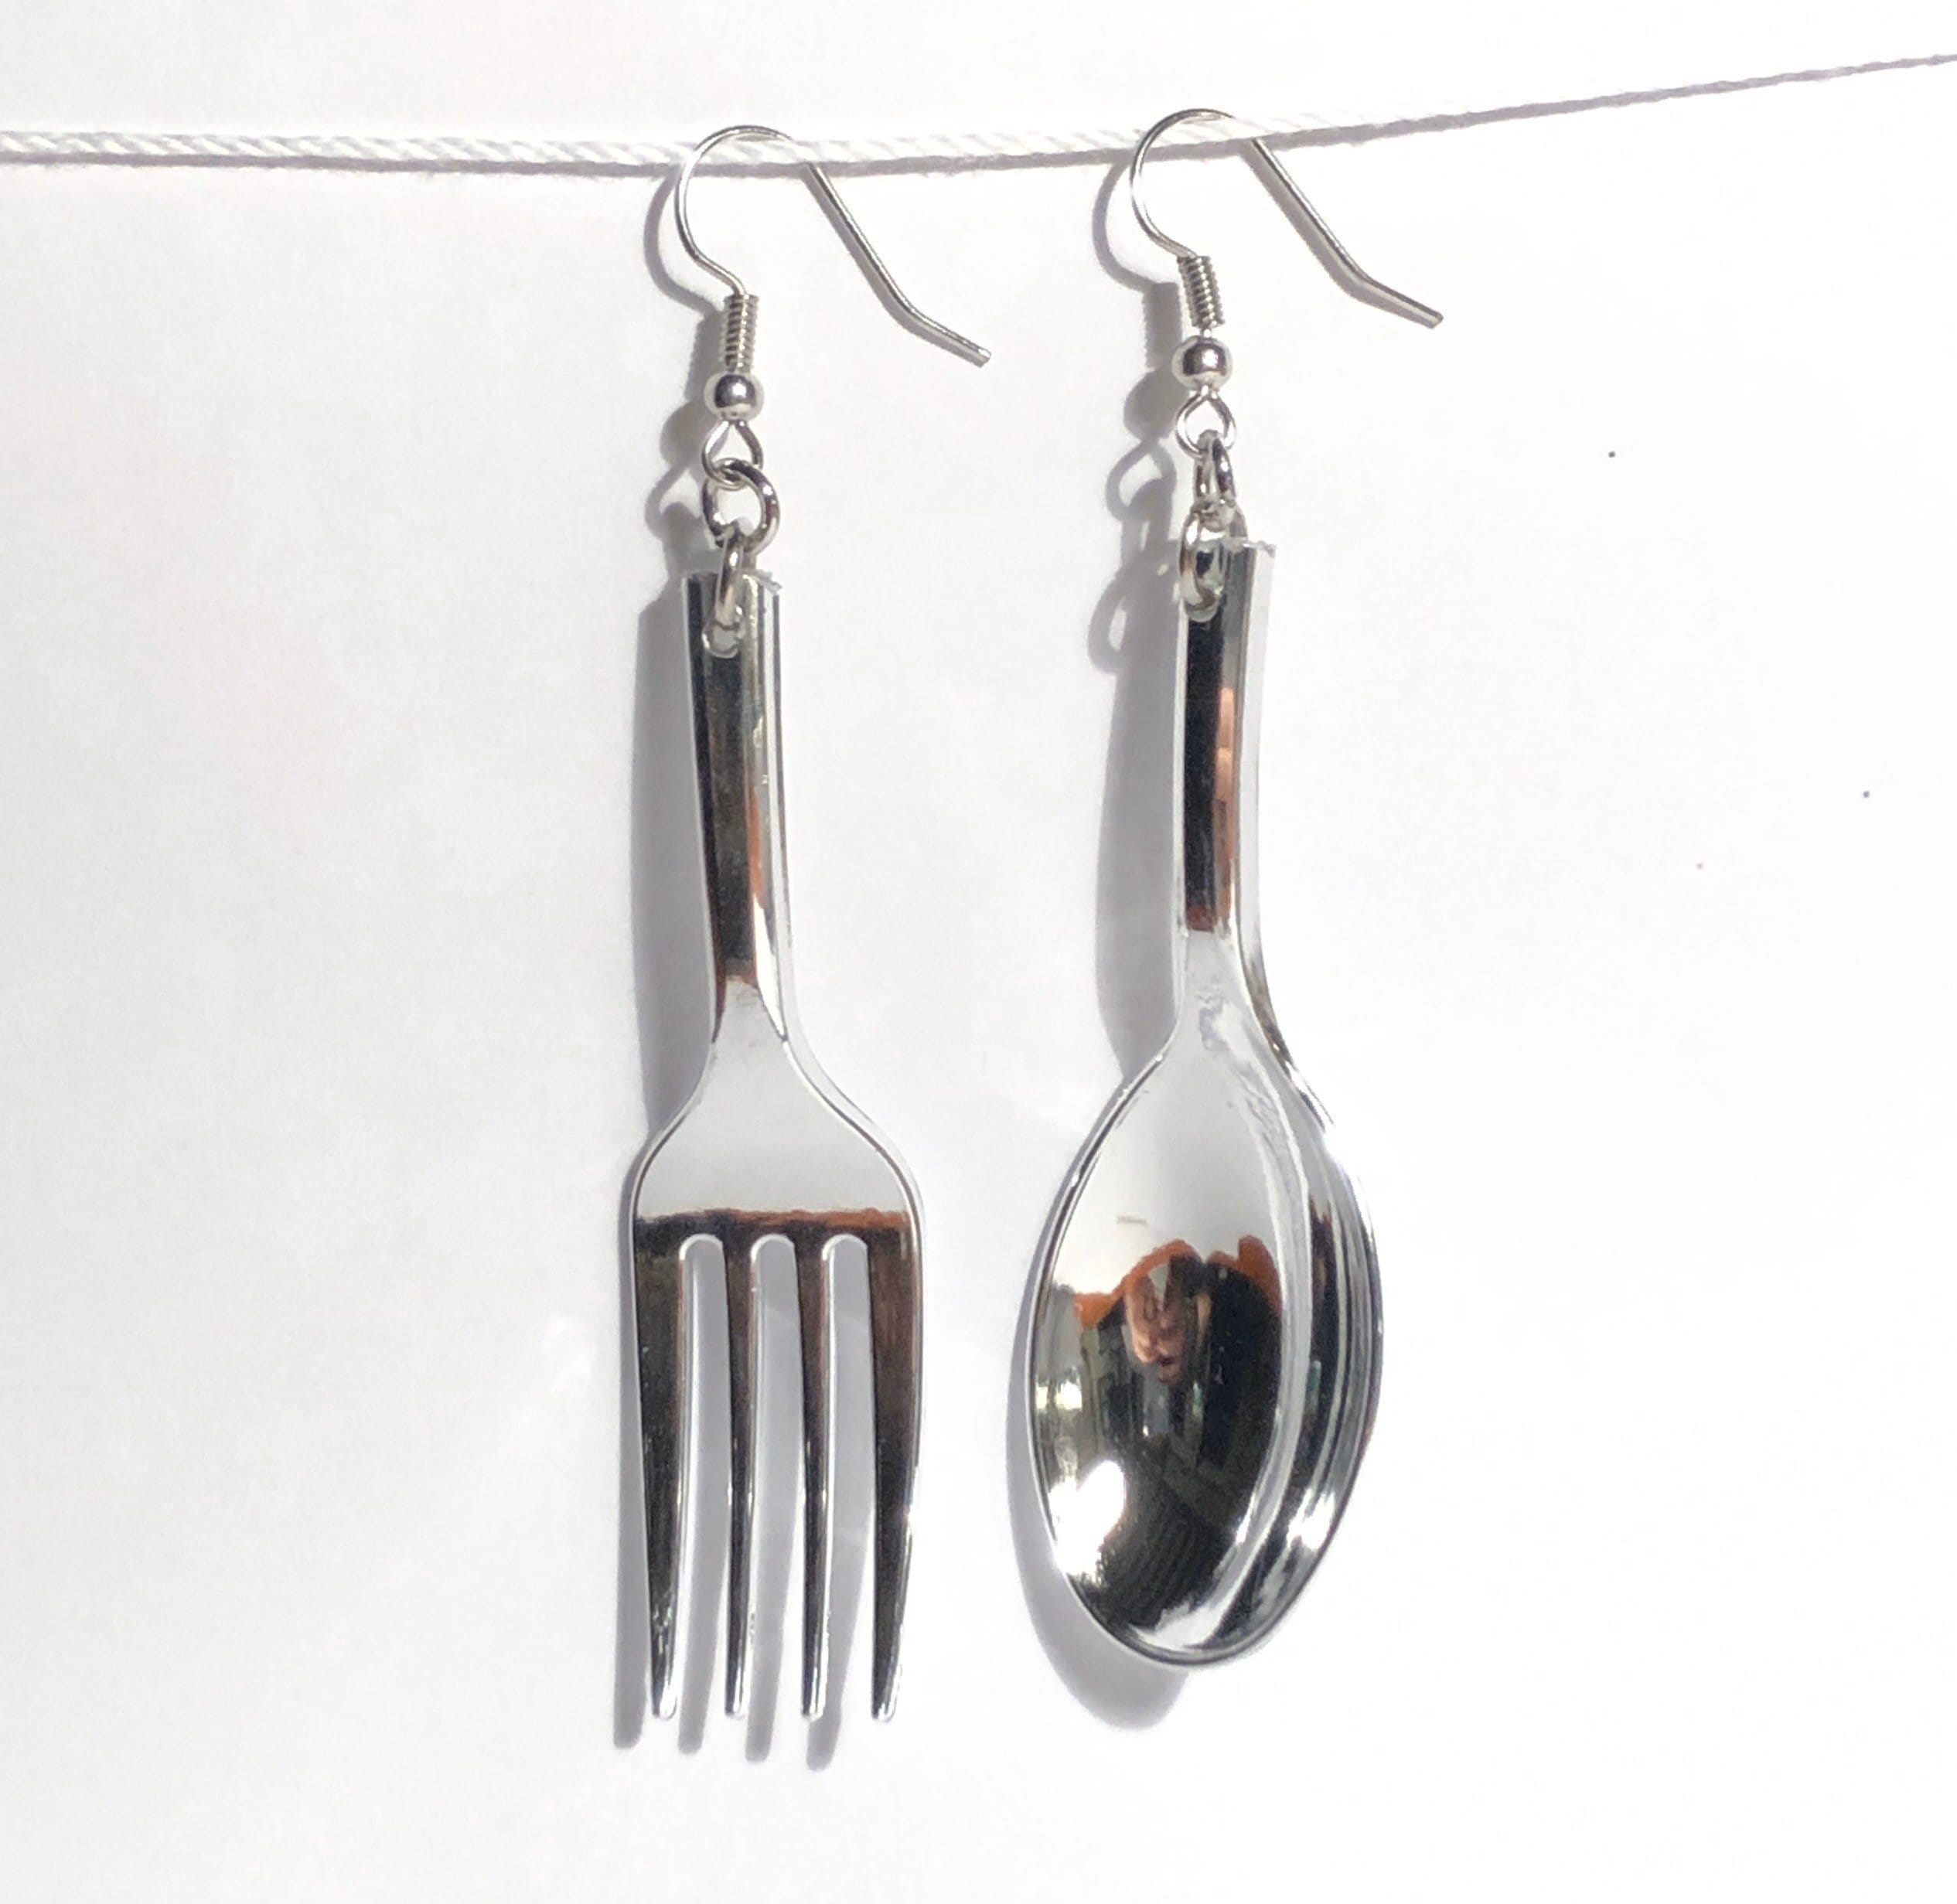 Silverware Spoon Fork Eating .925 Sterling Silver Food Utensils Stud Earrings 